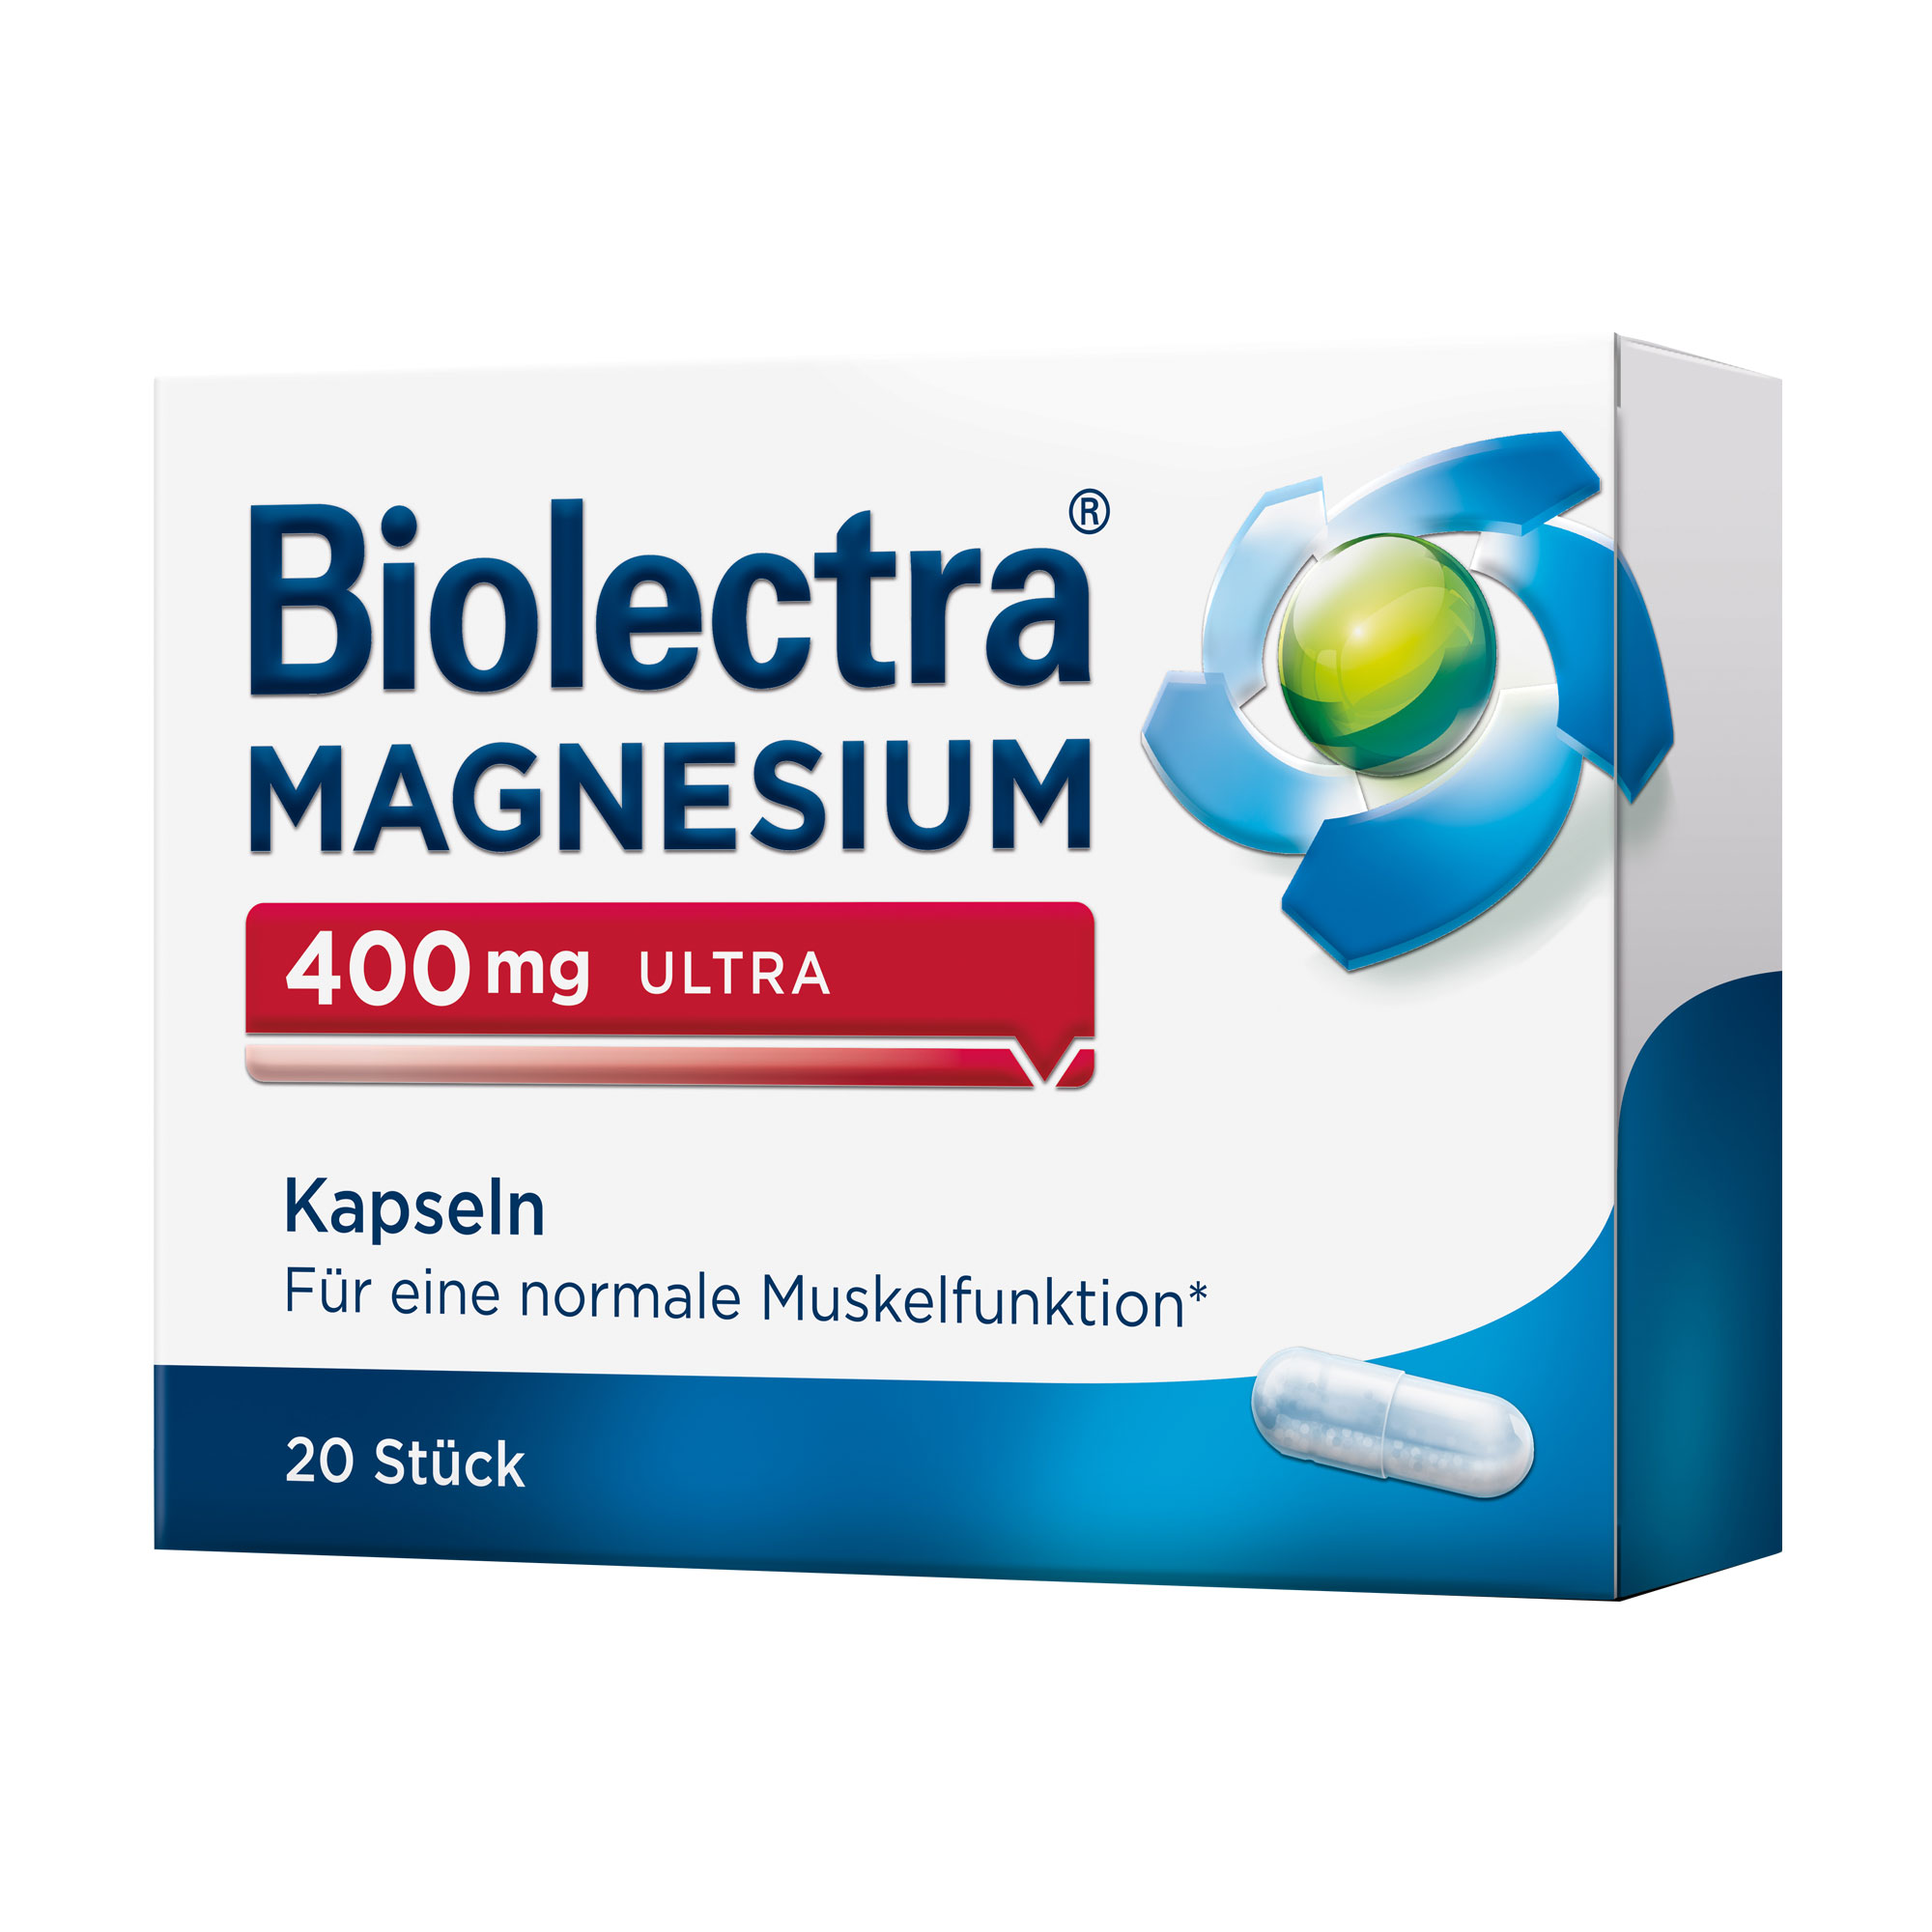 Nahrungsergänzungsmittel mit 400 mg Magnesium pro Kapsel. Vegan.